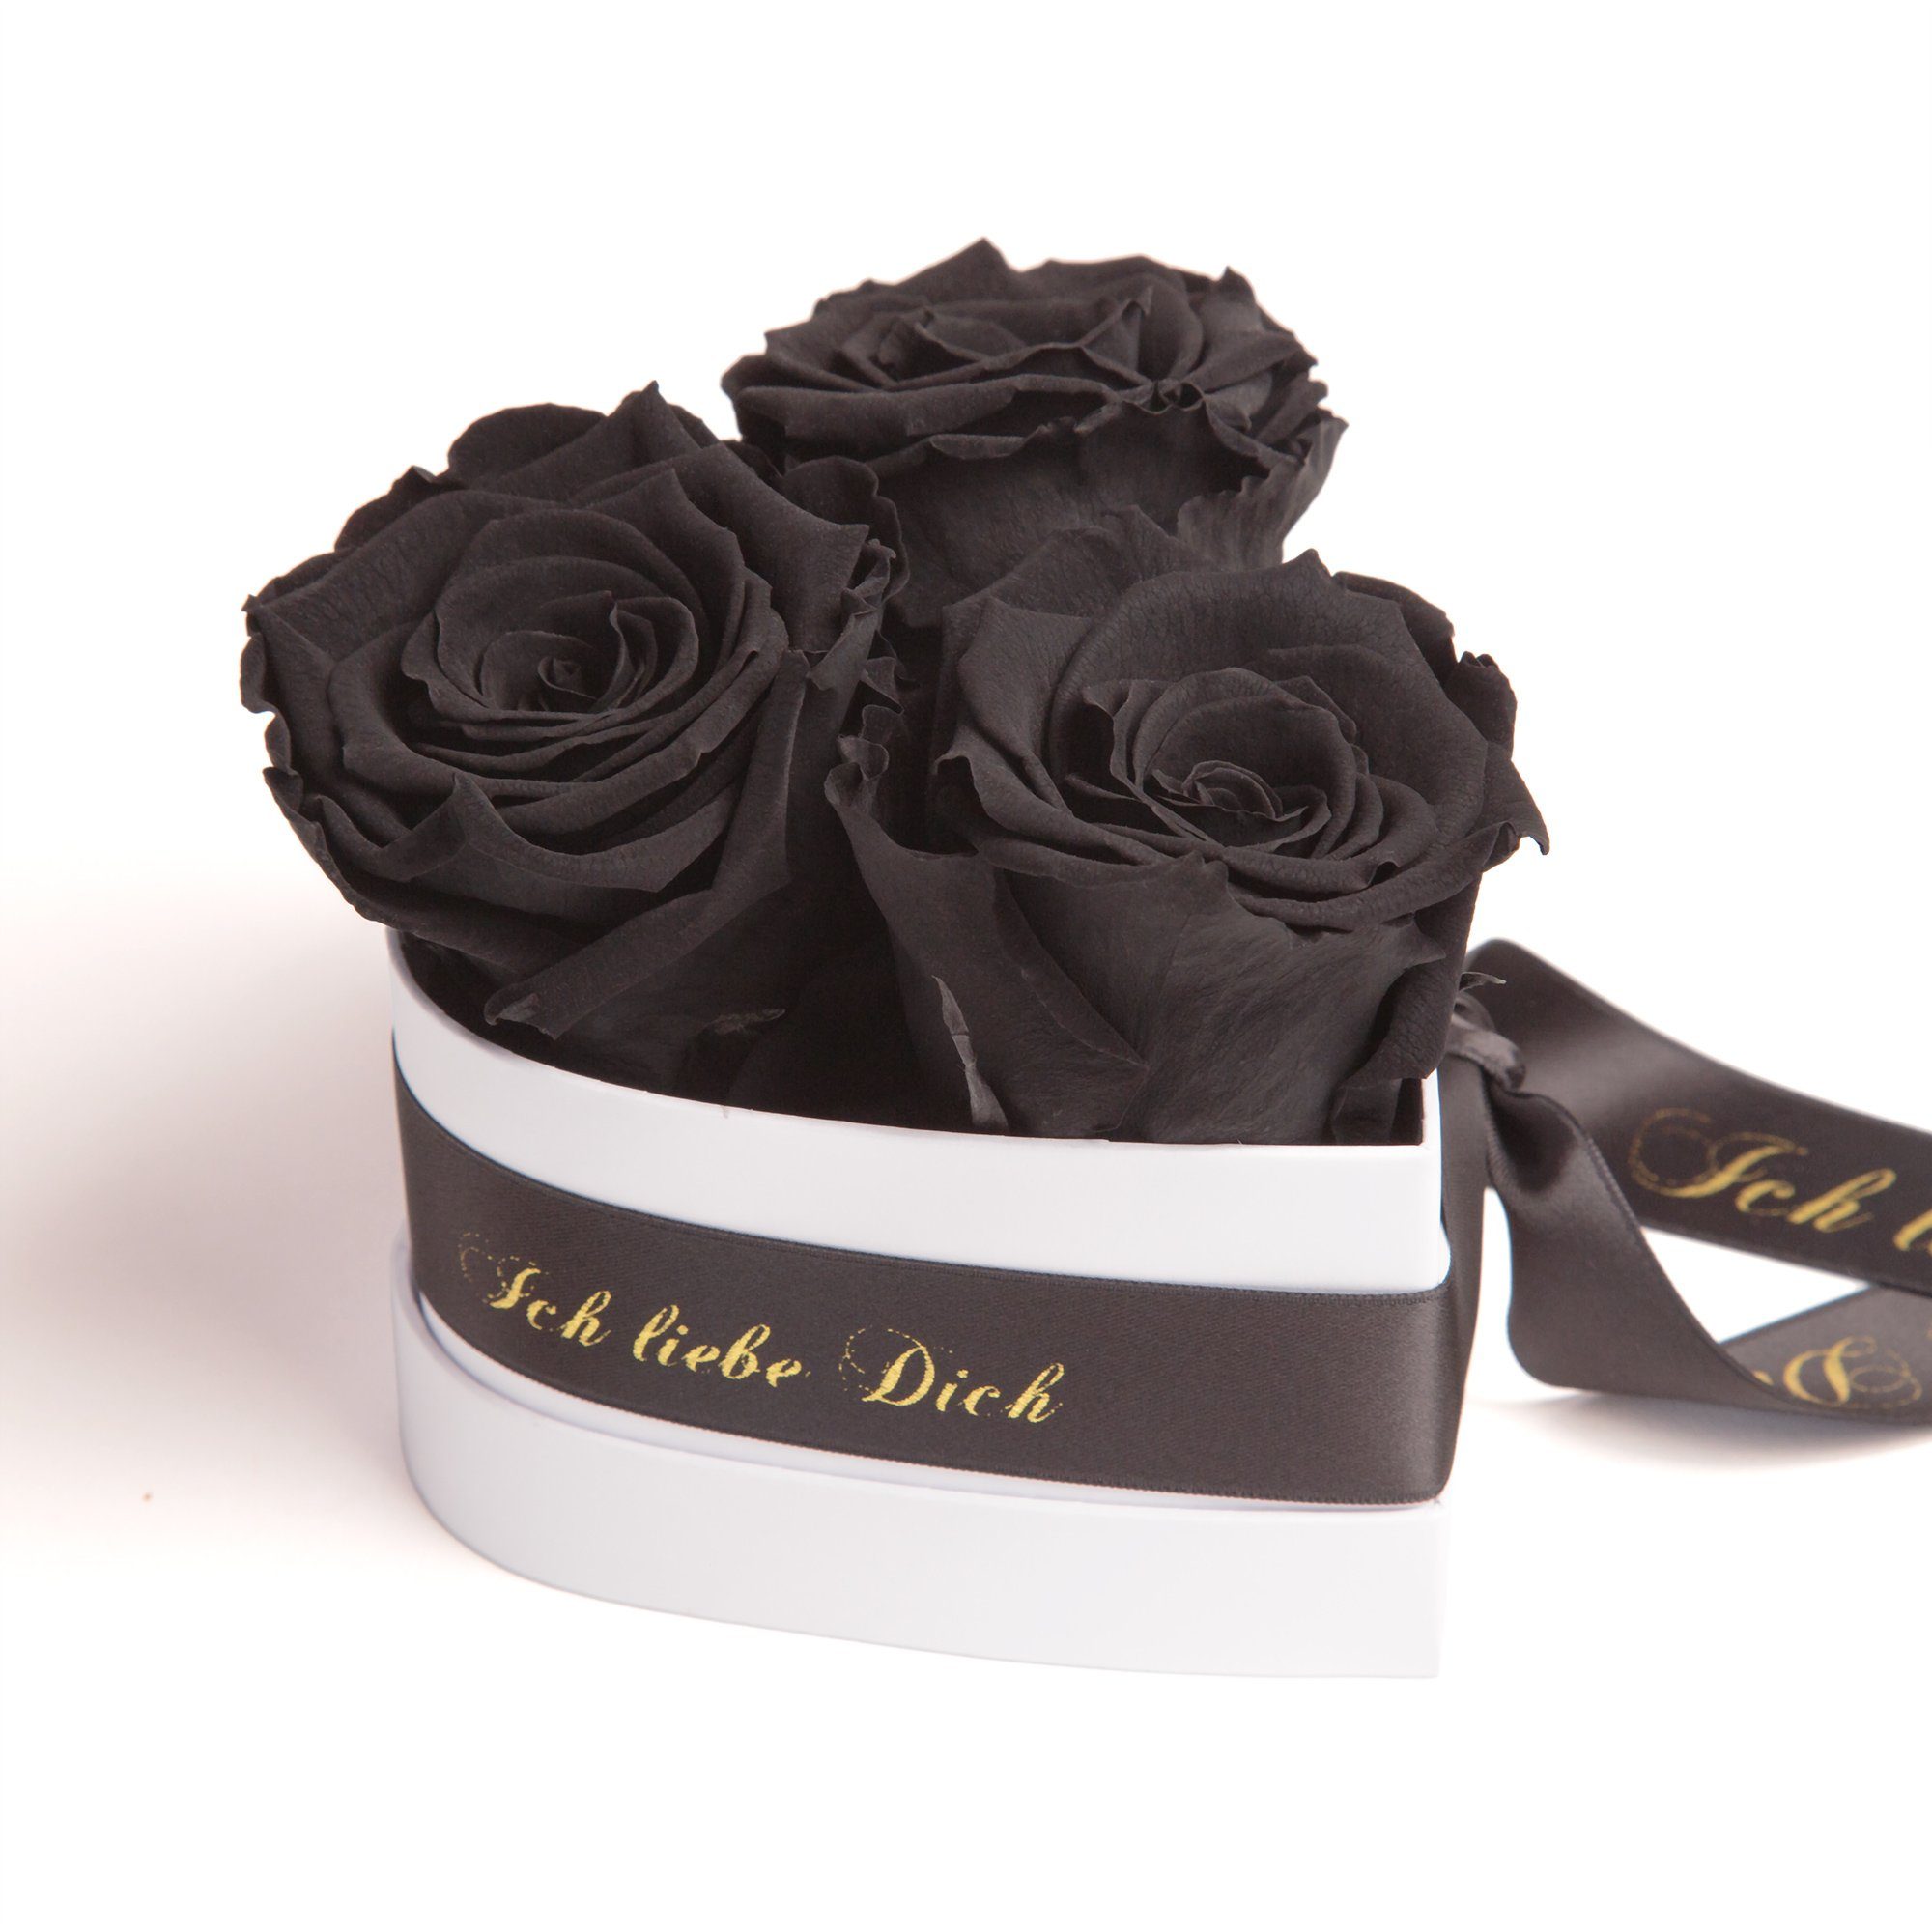 Kunstblume Rosenbox Herz 3 infinity Rosen Ich liebe Dich Geschenk für Sie Rose, ROSEMARIE SCHULZ Heidelberg, Höhe 10 cm, Liebesbeweis Valentinstag